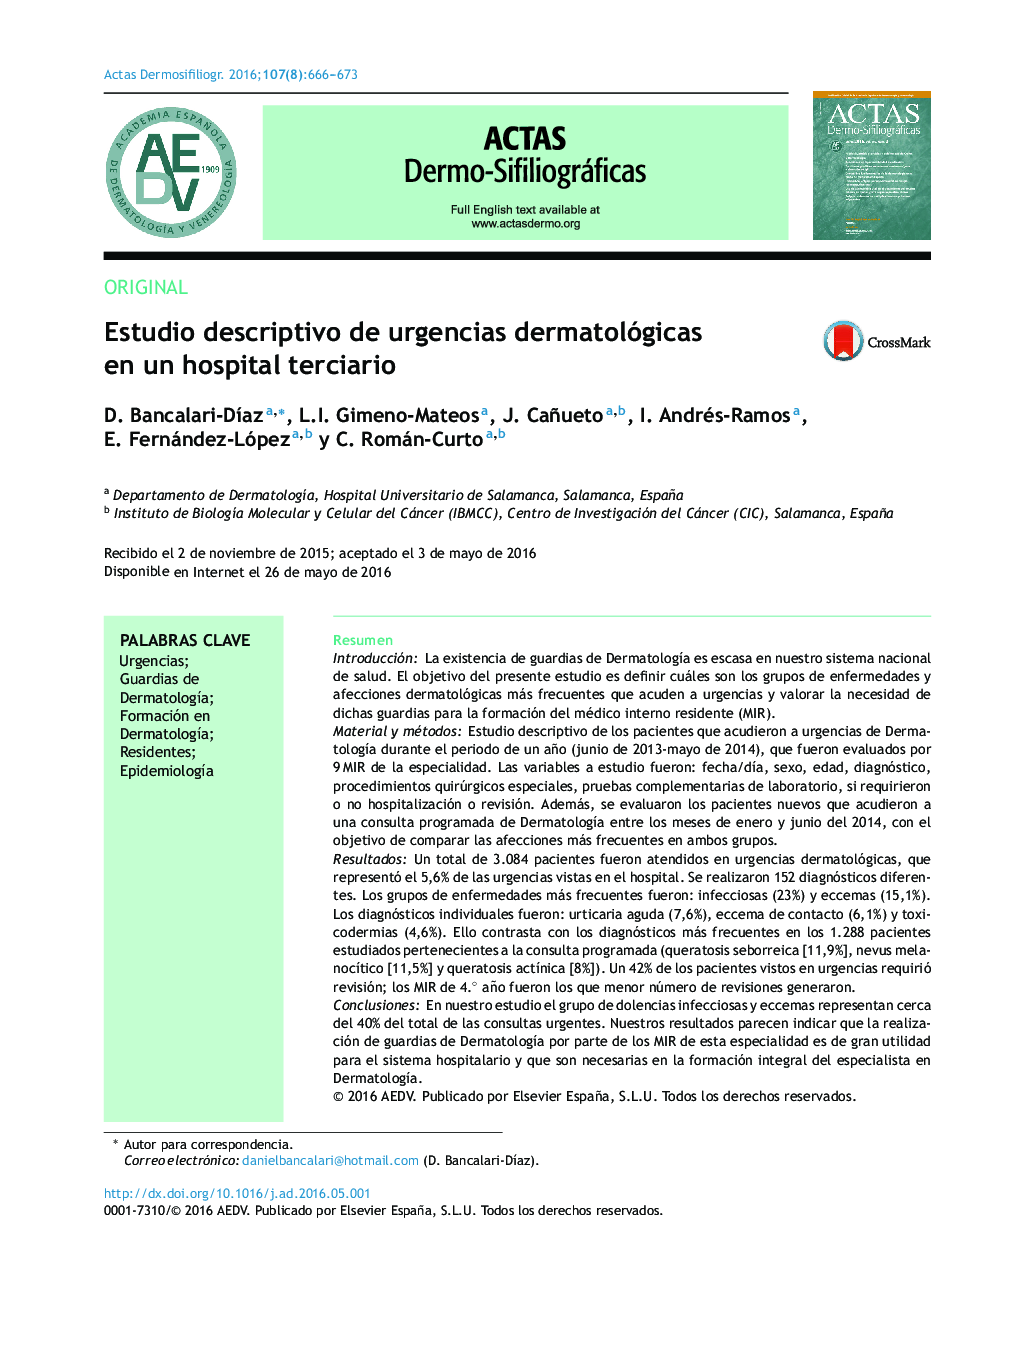 Estudio descriptivo de urgencias dermatológicas en un hospital terciario